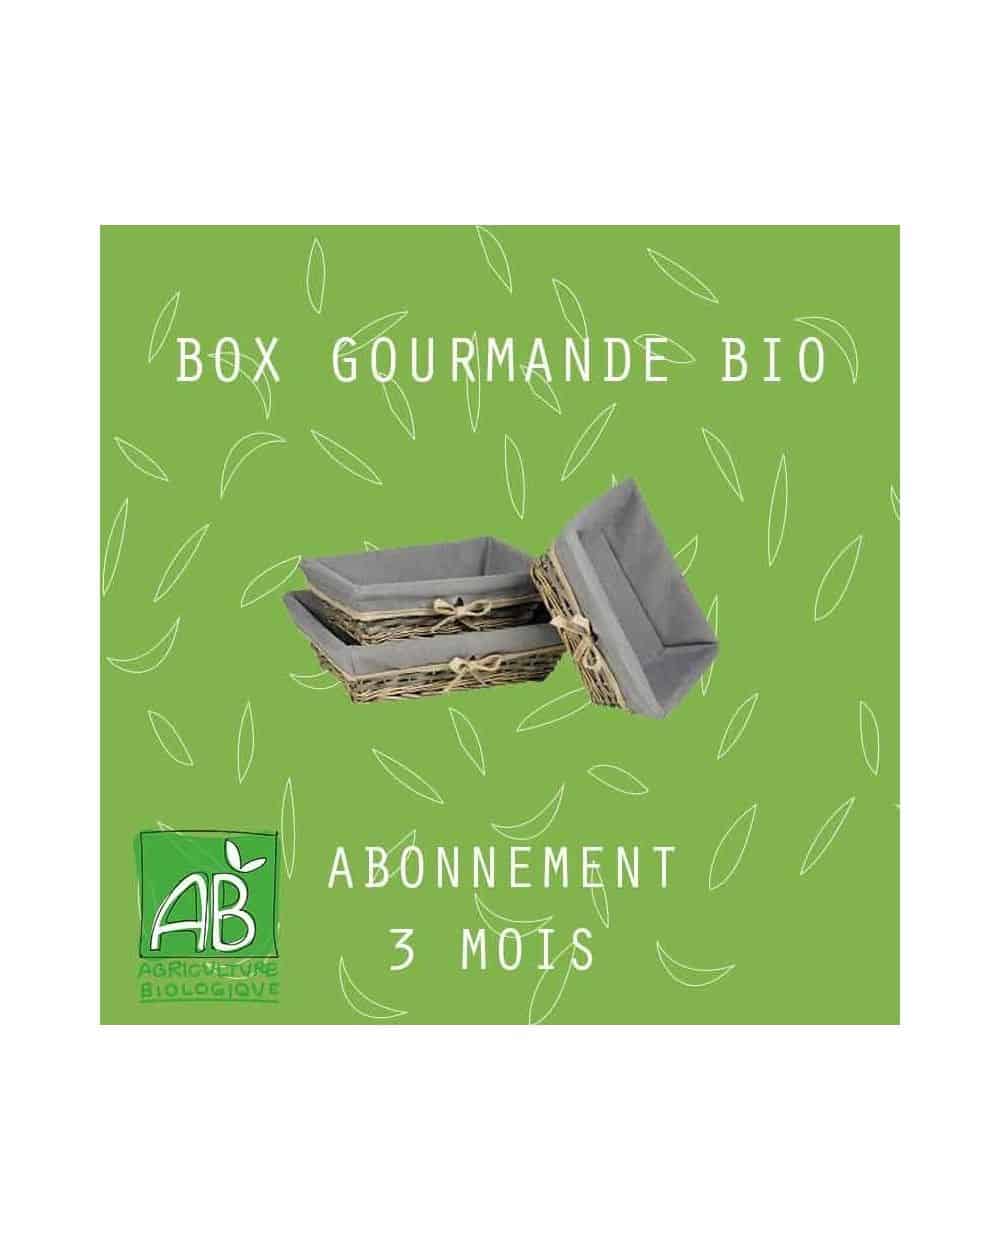 ABONNEMENT BOX GOURMANDE BIO